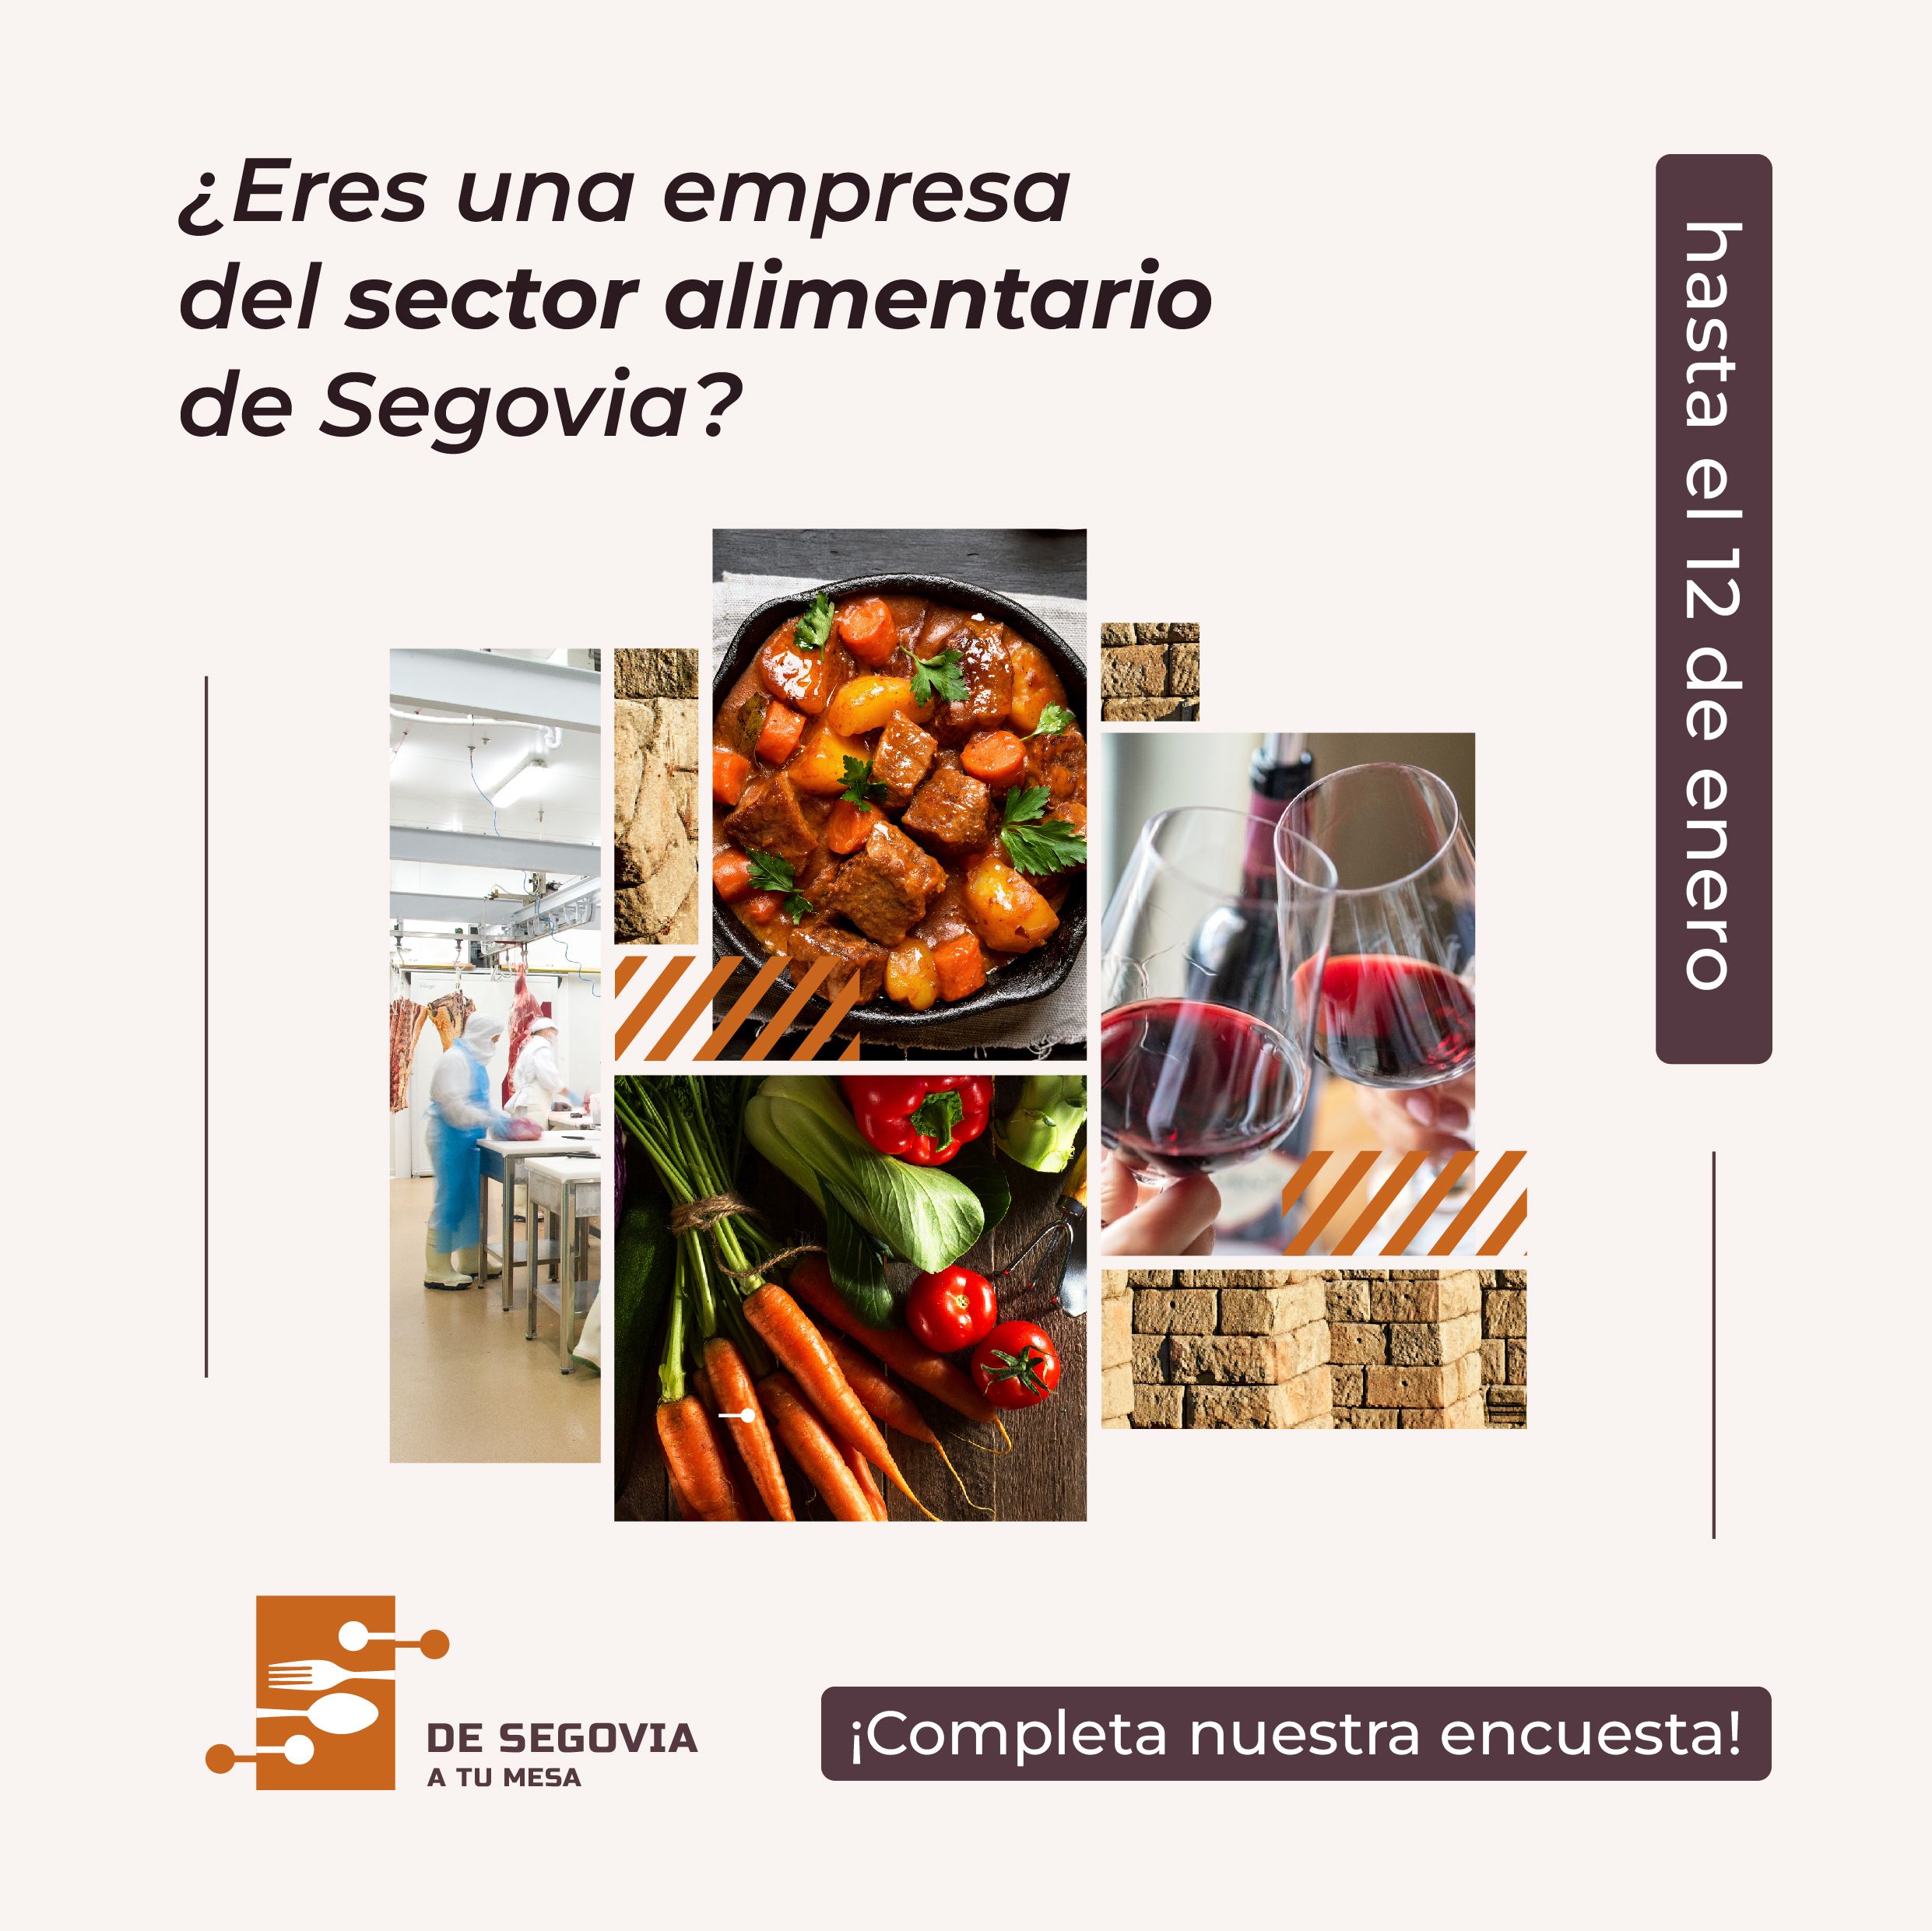 'De Segovia a tu mesa' lanza una encuesta para conocer el estado del sector alimentario